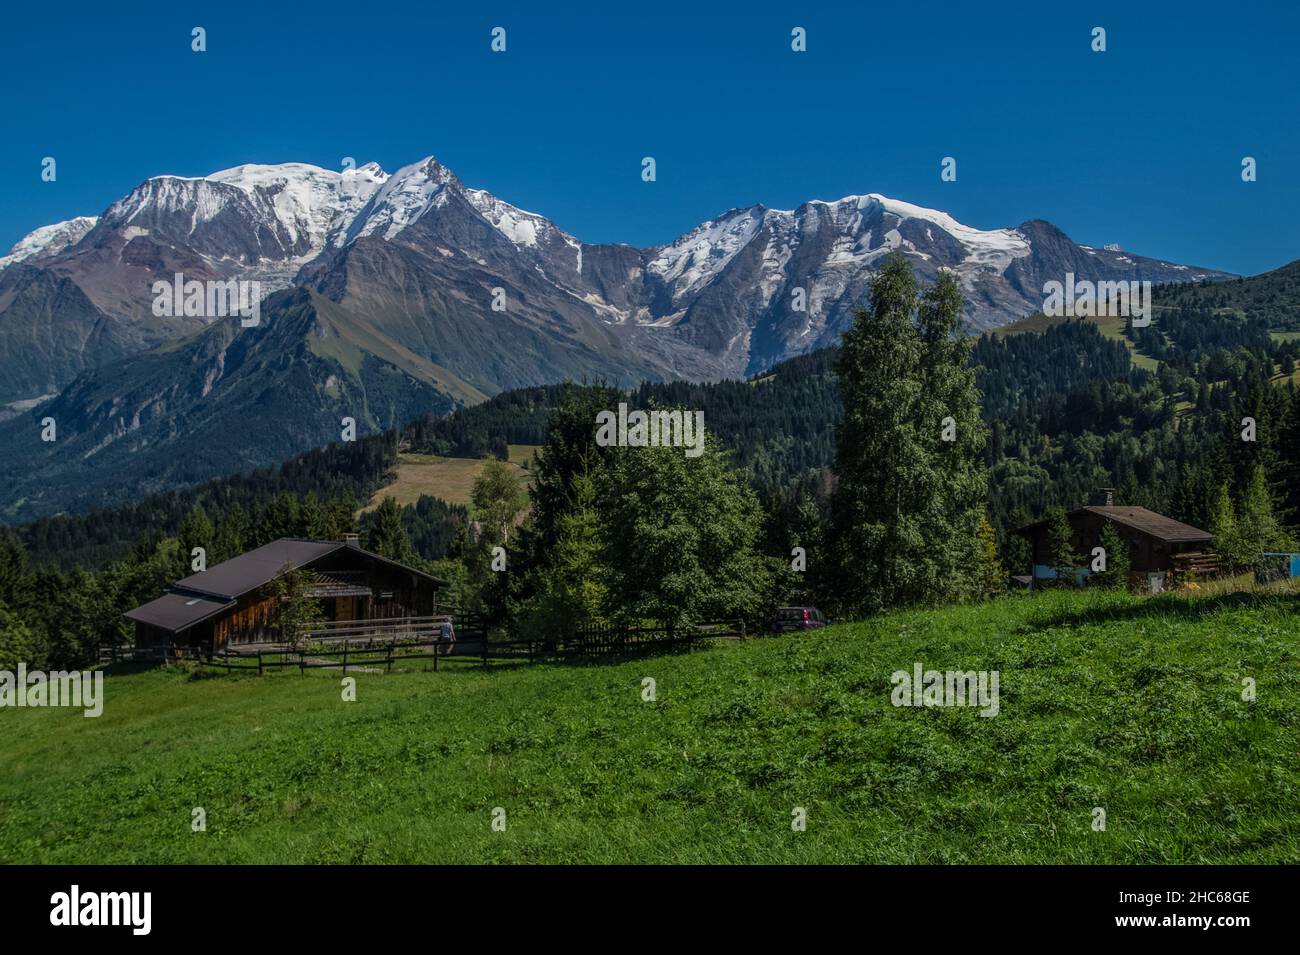 massif du mont blanc vue des communialles,saint gervais,hautz savoie,france Stock Photo